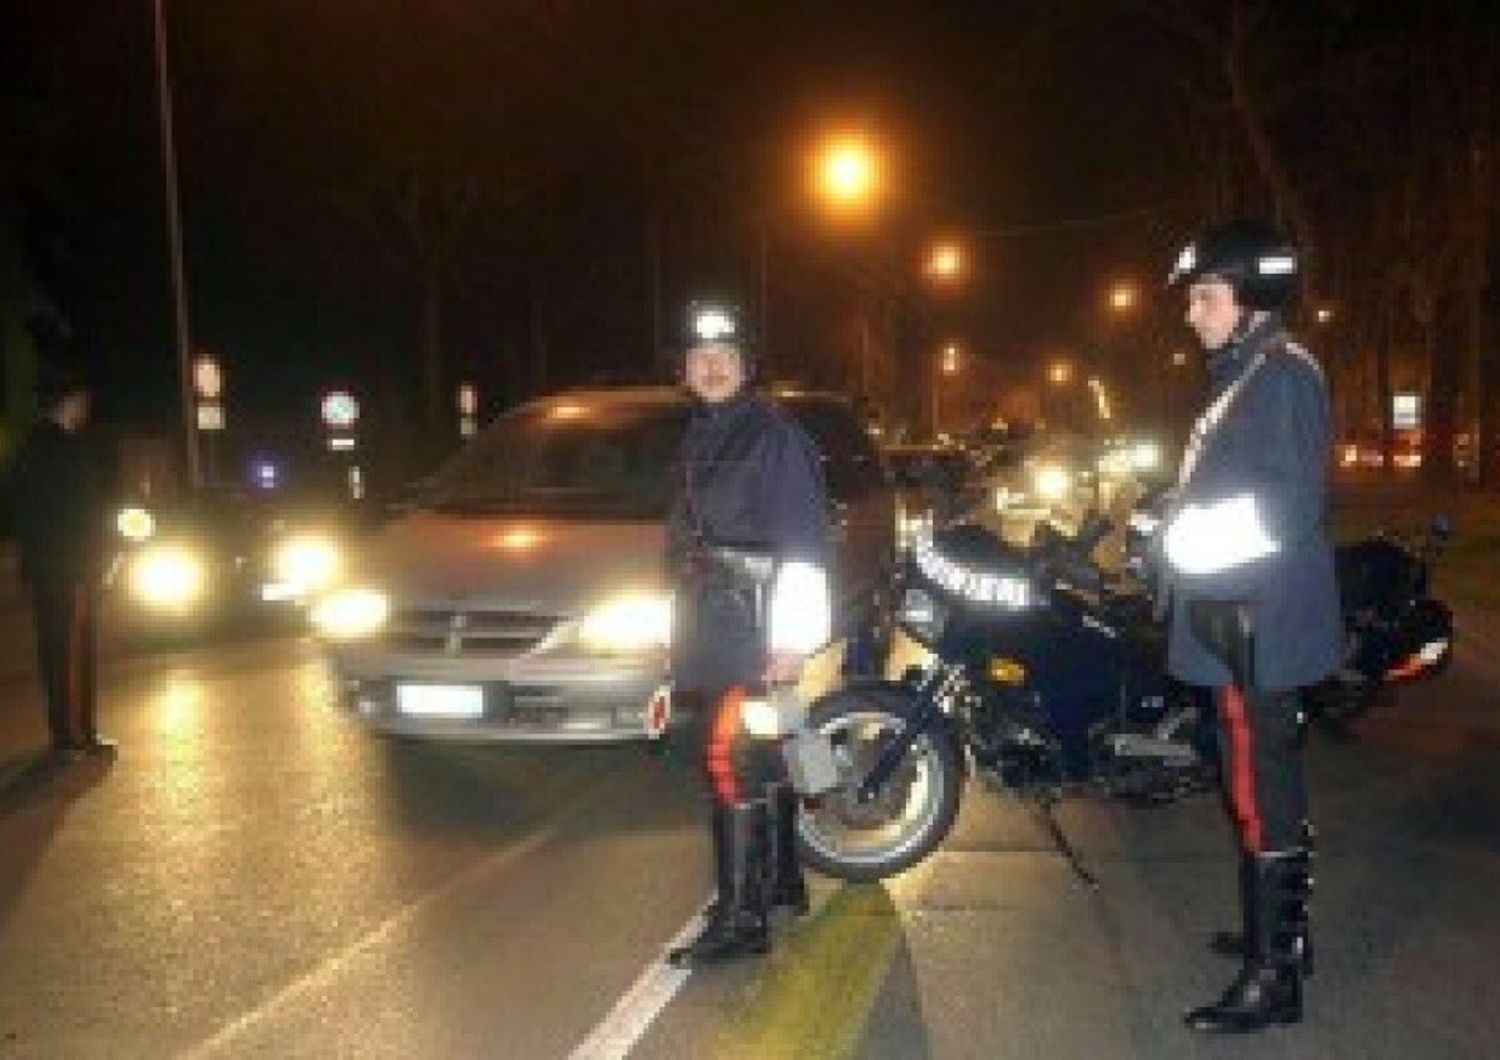 &nbsp;carabinieri in strada